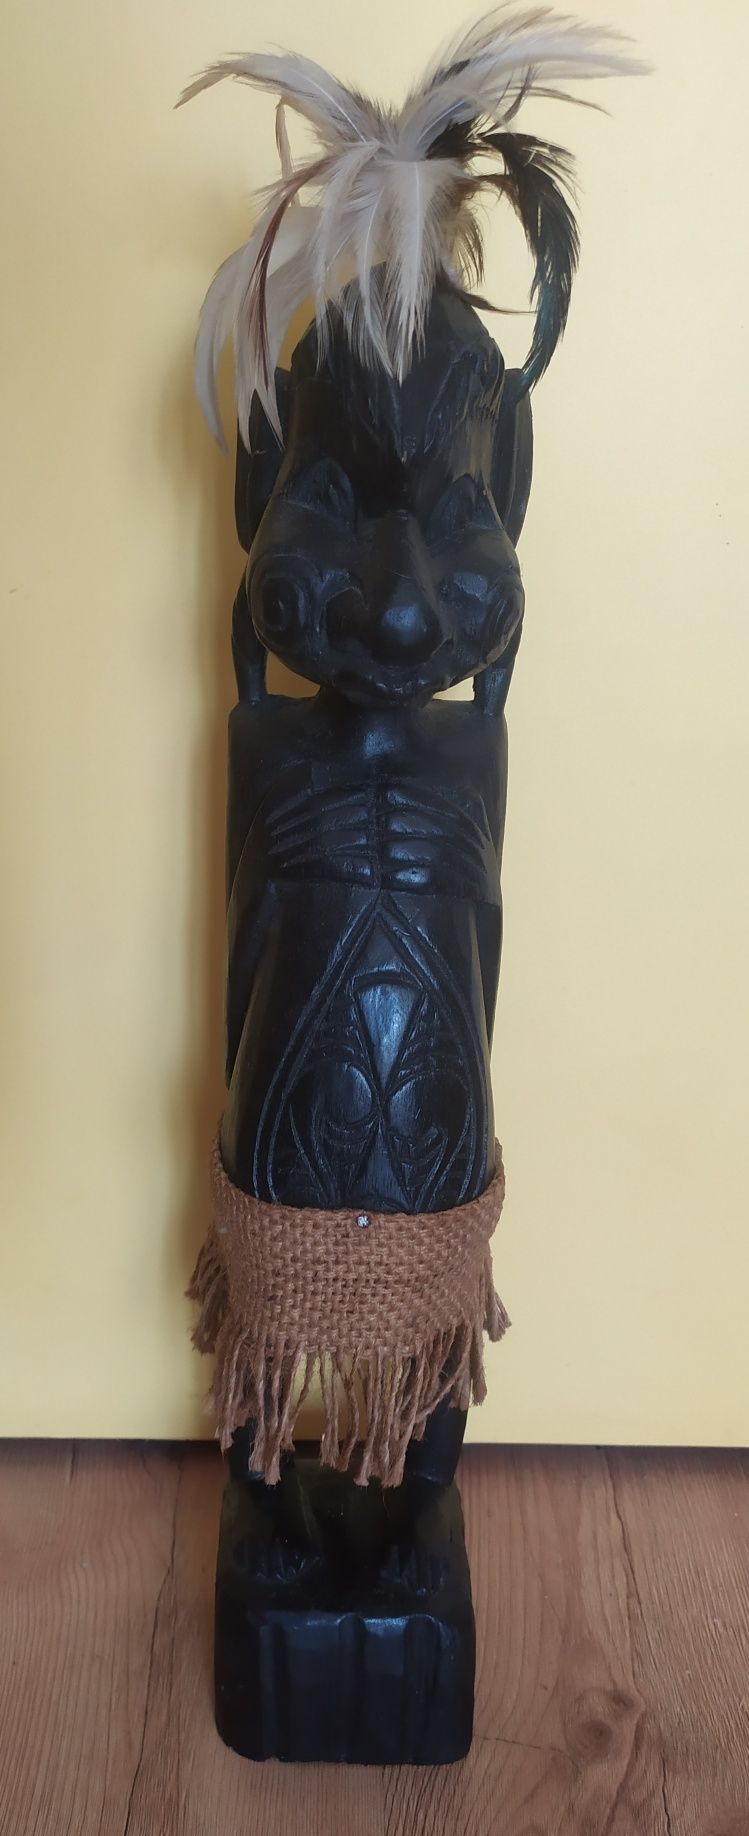 Rzeźba figurka drewniana na afrykański styl